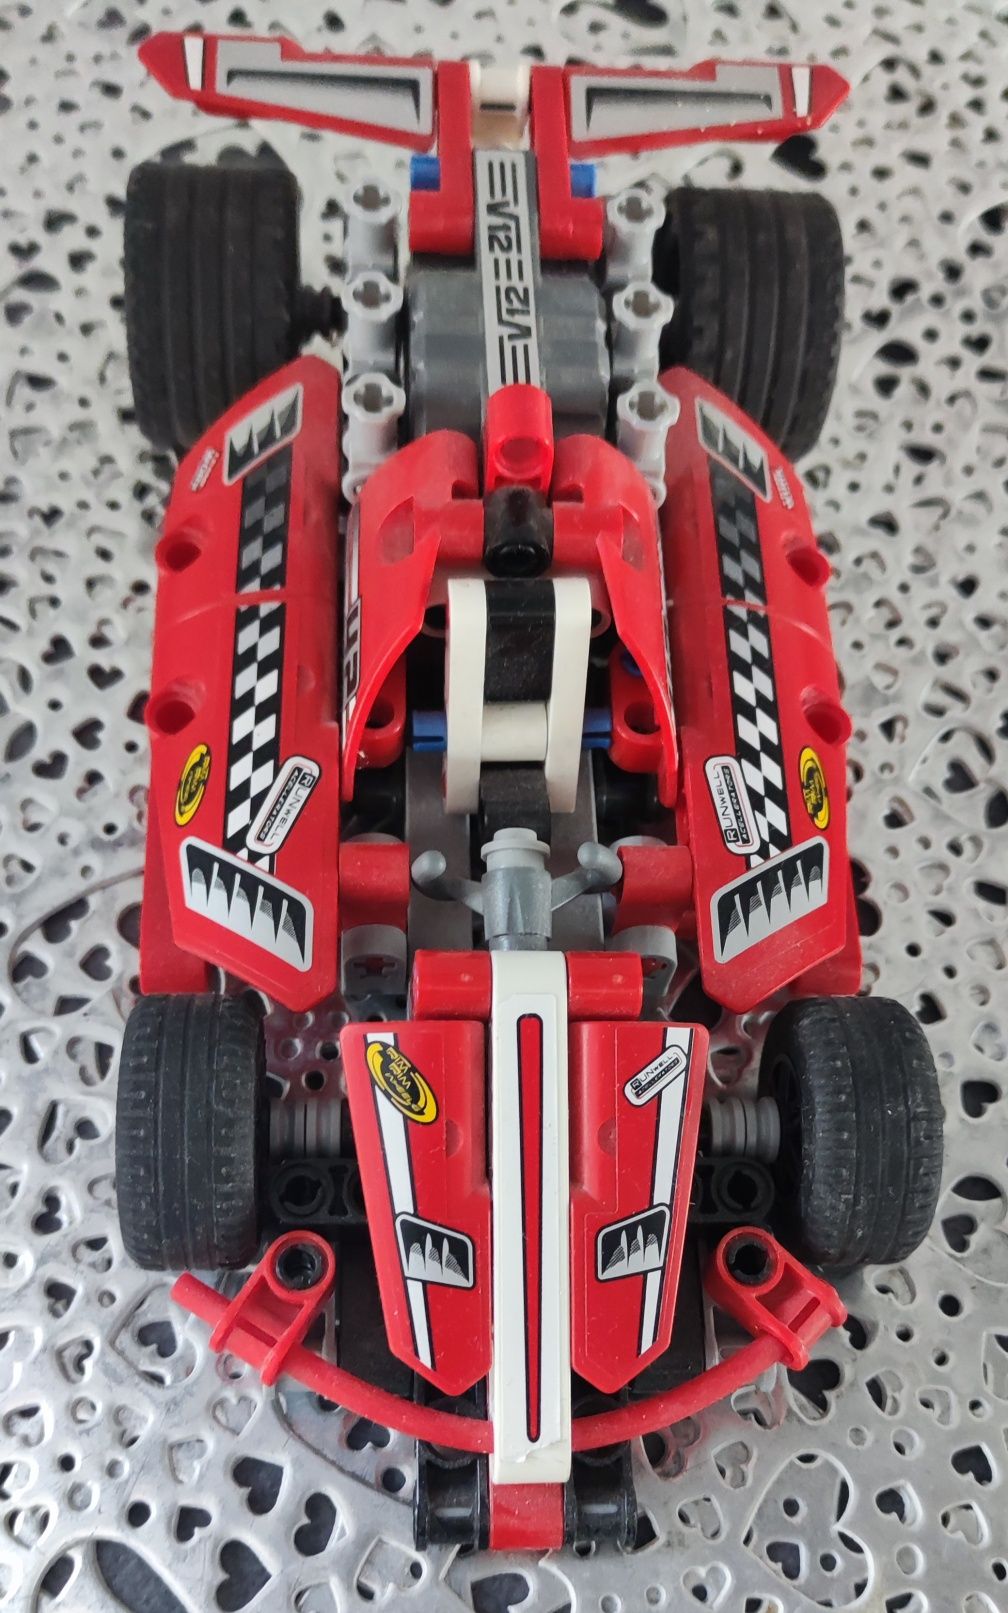 LEGO Technic 42011 samochód wyścigowy